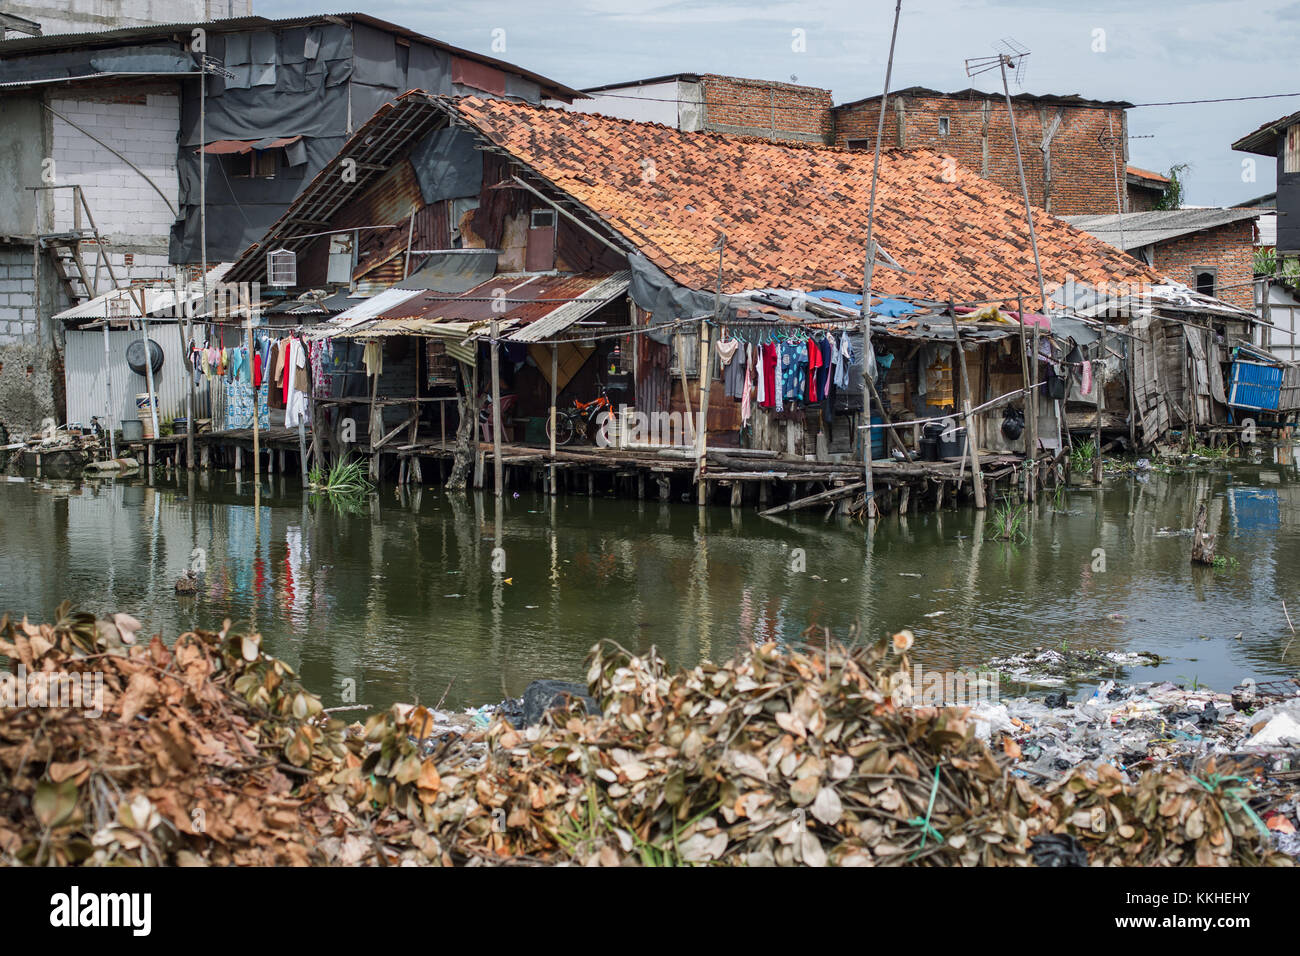 Di Giacarta, a Jakarta, Indonesia. 1 dicembre, 2017. Case danneggiato dall'acqua in kapuk teko, Giacarta. a 6 ettaro delle baraccopoli in kapuk teko sottodistretto di Giacarta, è stata soggetta a inondazioni dal 1992. Era un peatland situato a poche centinaia di metri dalla zona costiera. La profondità di acqua è stato appena venti centimetri di distanza. Ma il nord di Jakarta progetto di bonifica finalizzate alla creazione di un residence elite e area industriale ha impedito l'acqua da normalmente che scorre dalla zona centrale della città di mare. La zona è ora minore precipitazione. Ogni anno 200 famiglie, la maggior parte dei quali sono poveri, sono costretto a Foto Stock